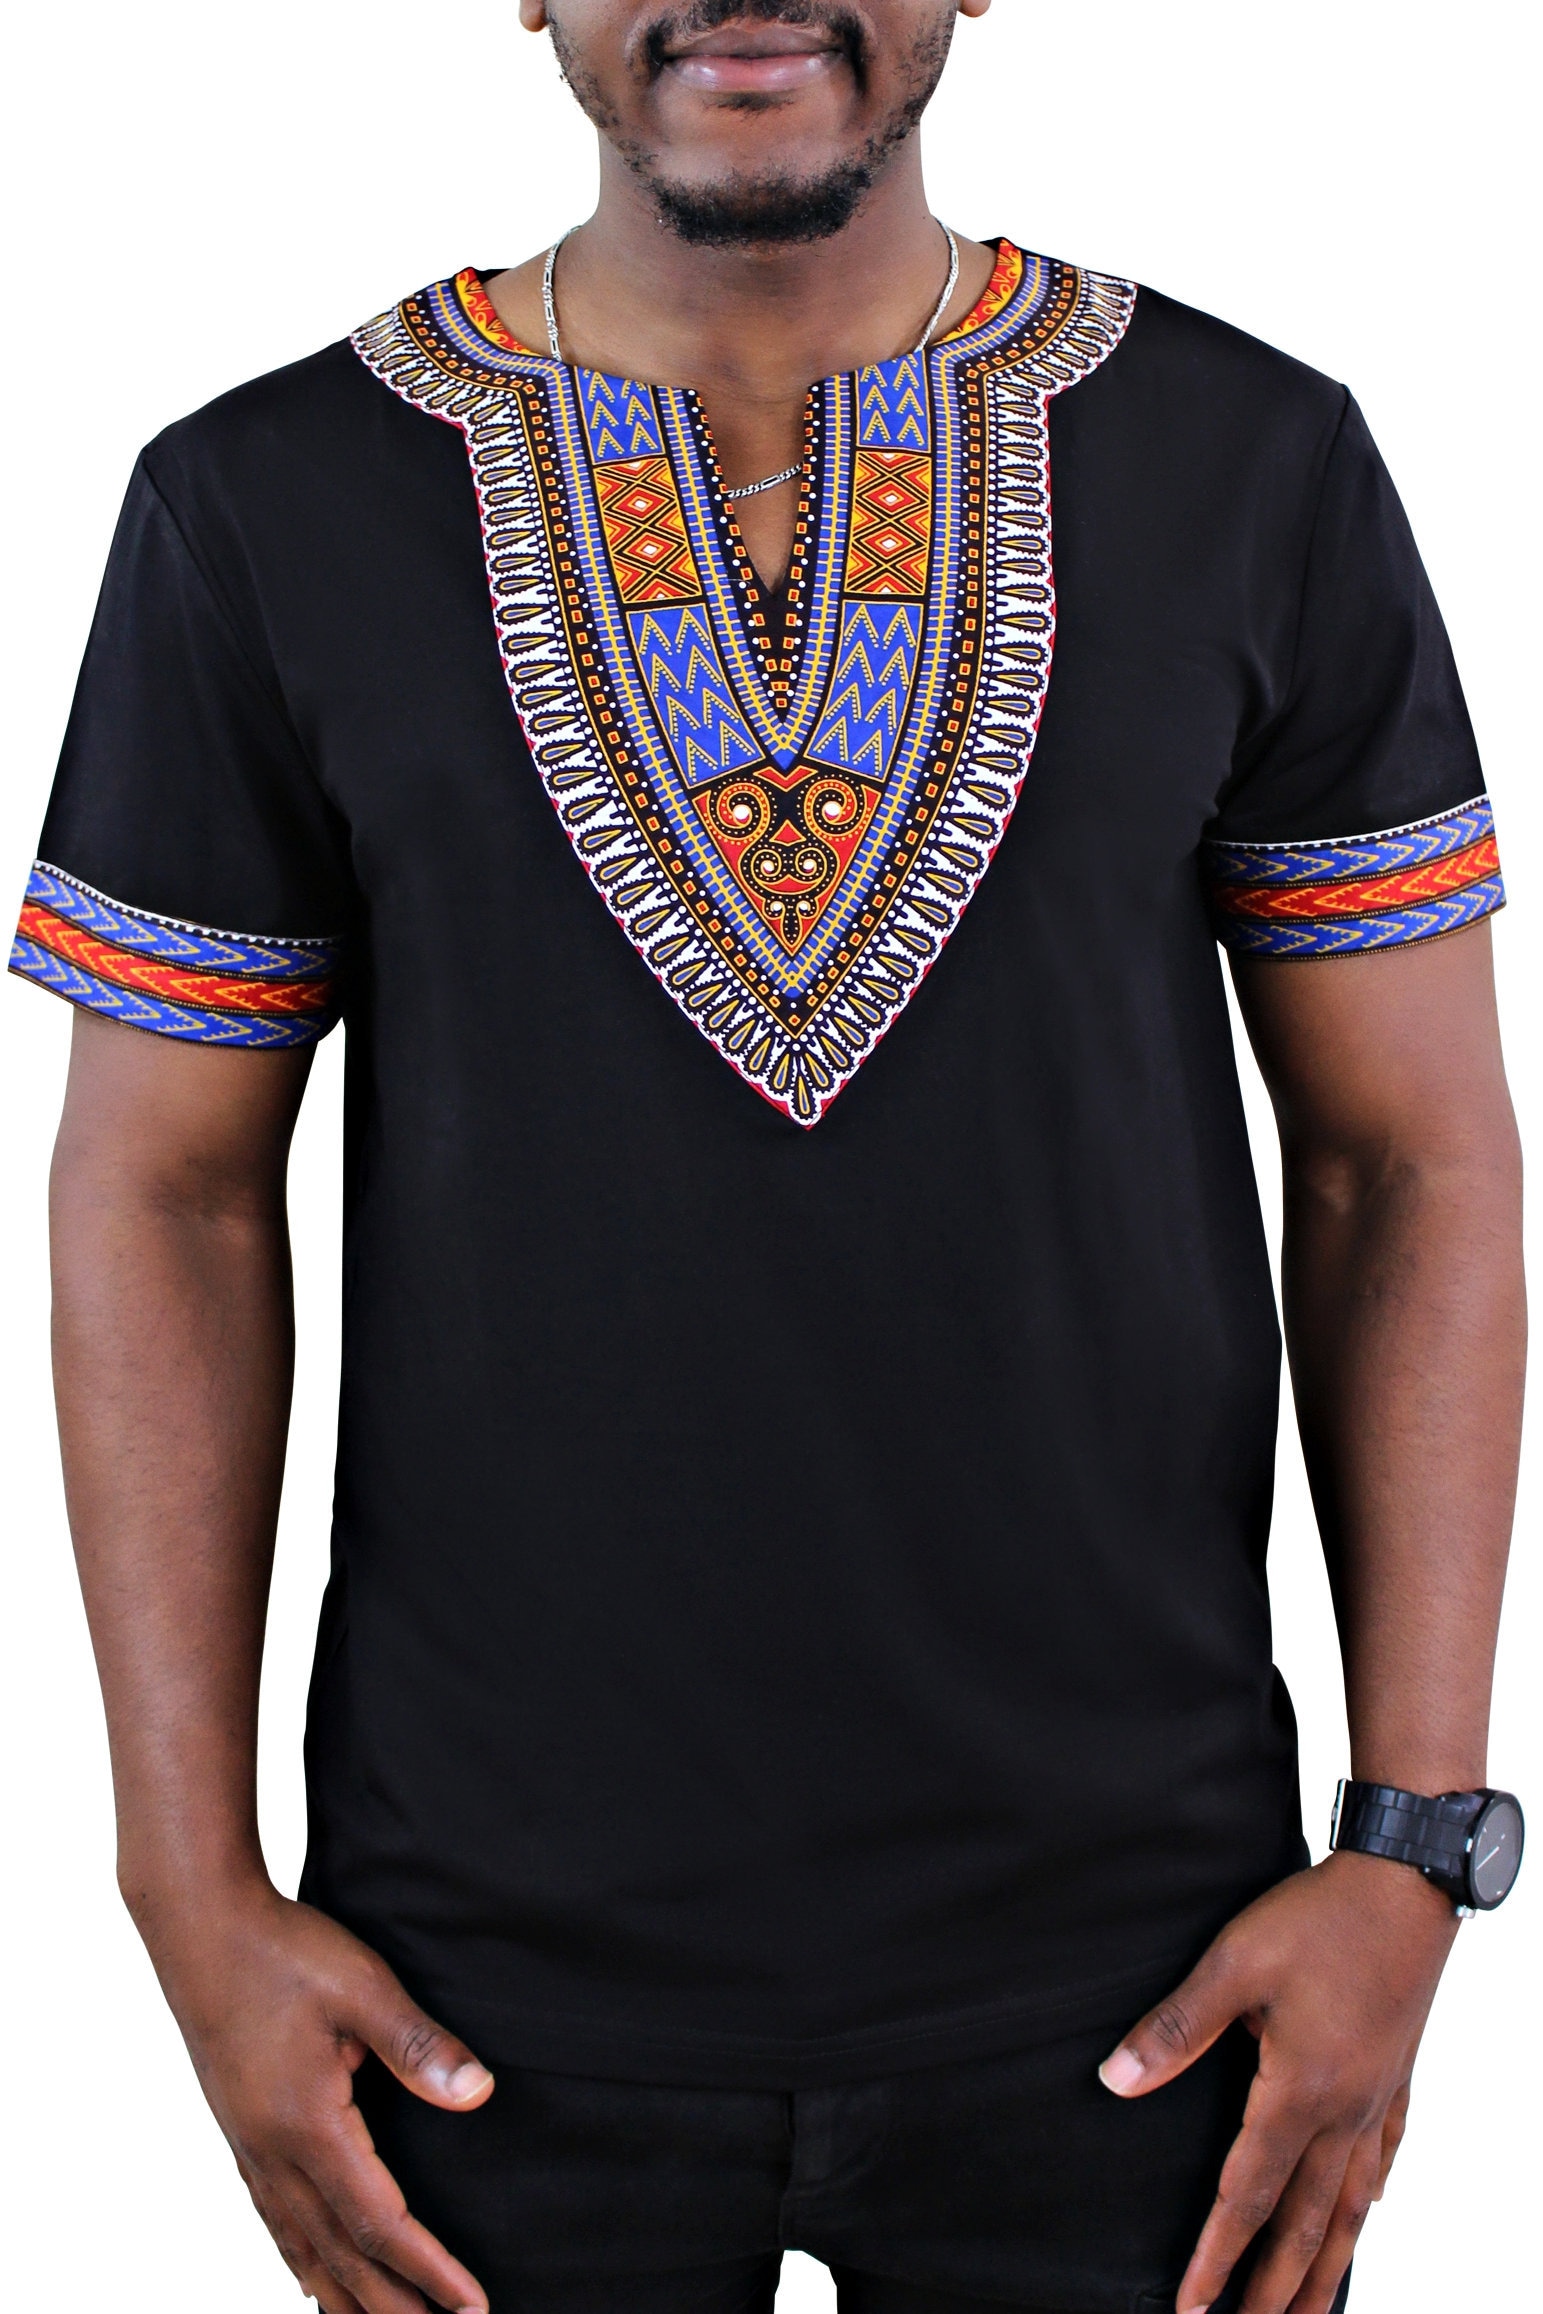 Dashiki Men Shirt / African Dashiki Print Men T-shirt black | Etsy